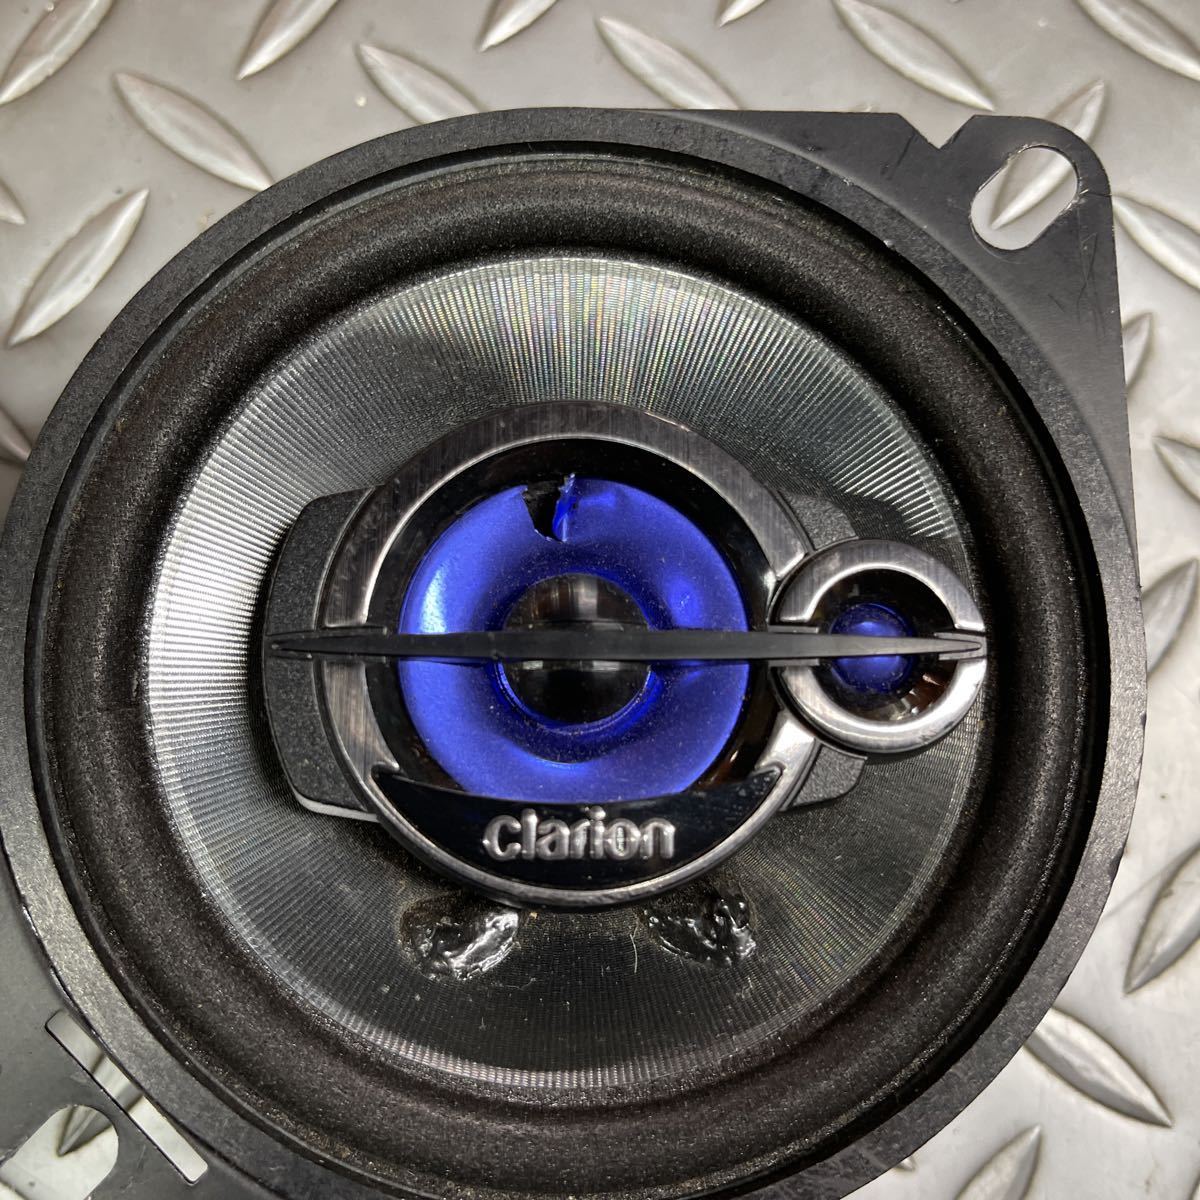 clarion 10cmスピーカー - カーオーディオ